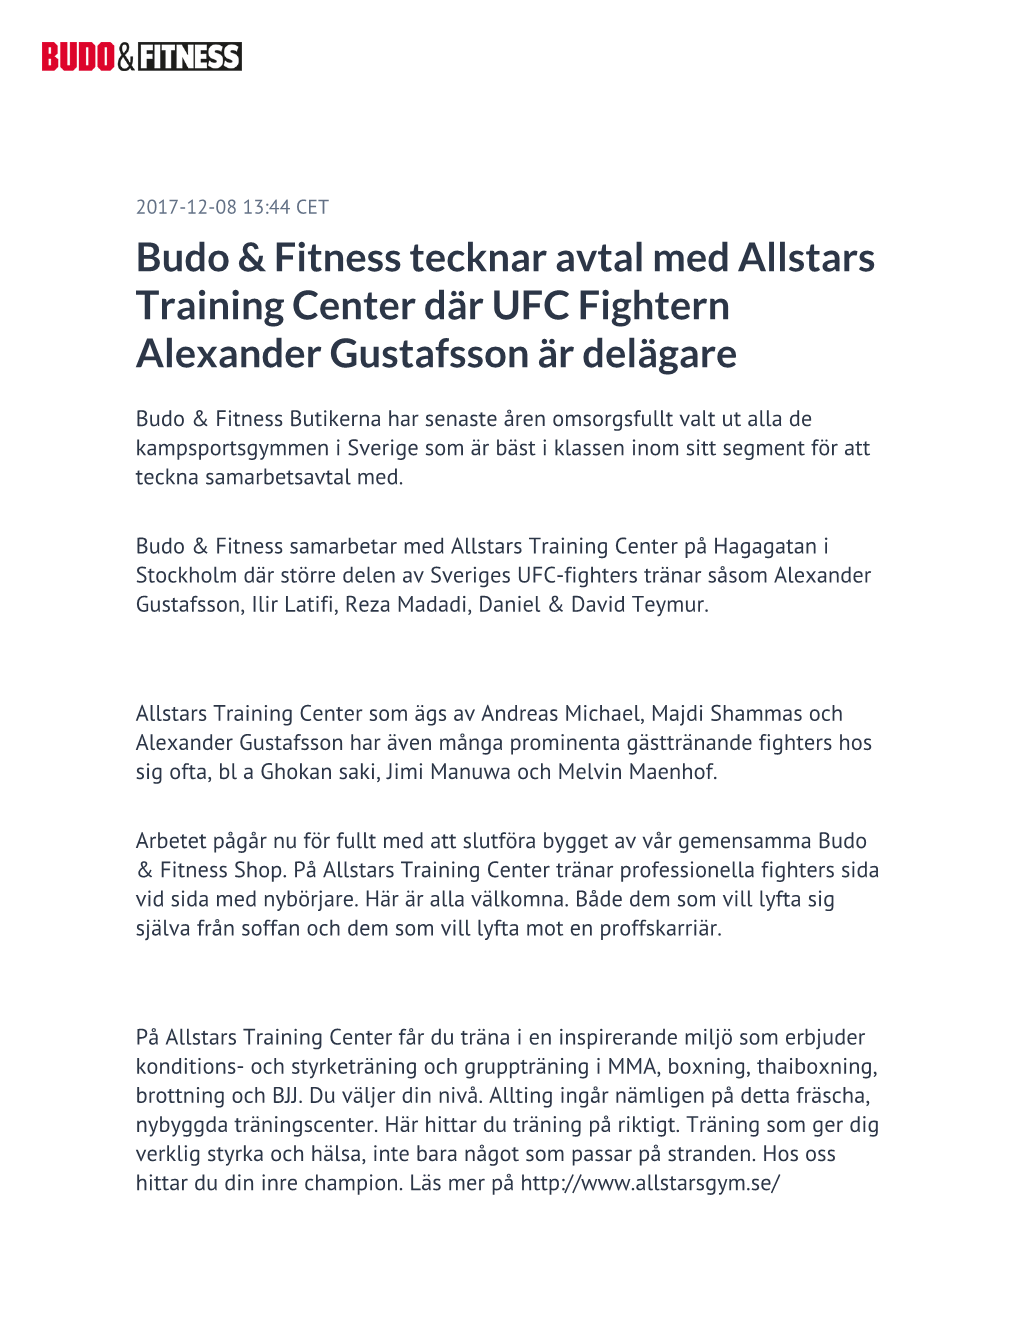 Budo & Fitness Tecknar Avtal Med Allstars Training Center Där UFC